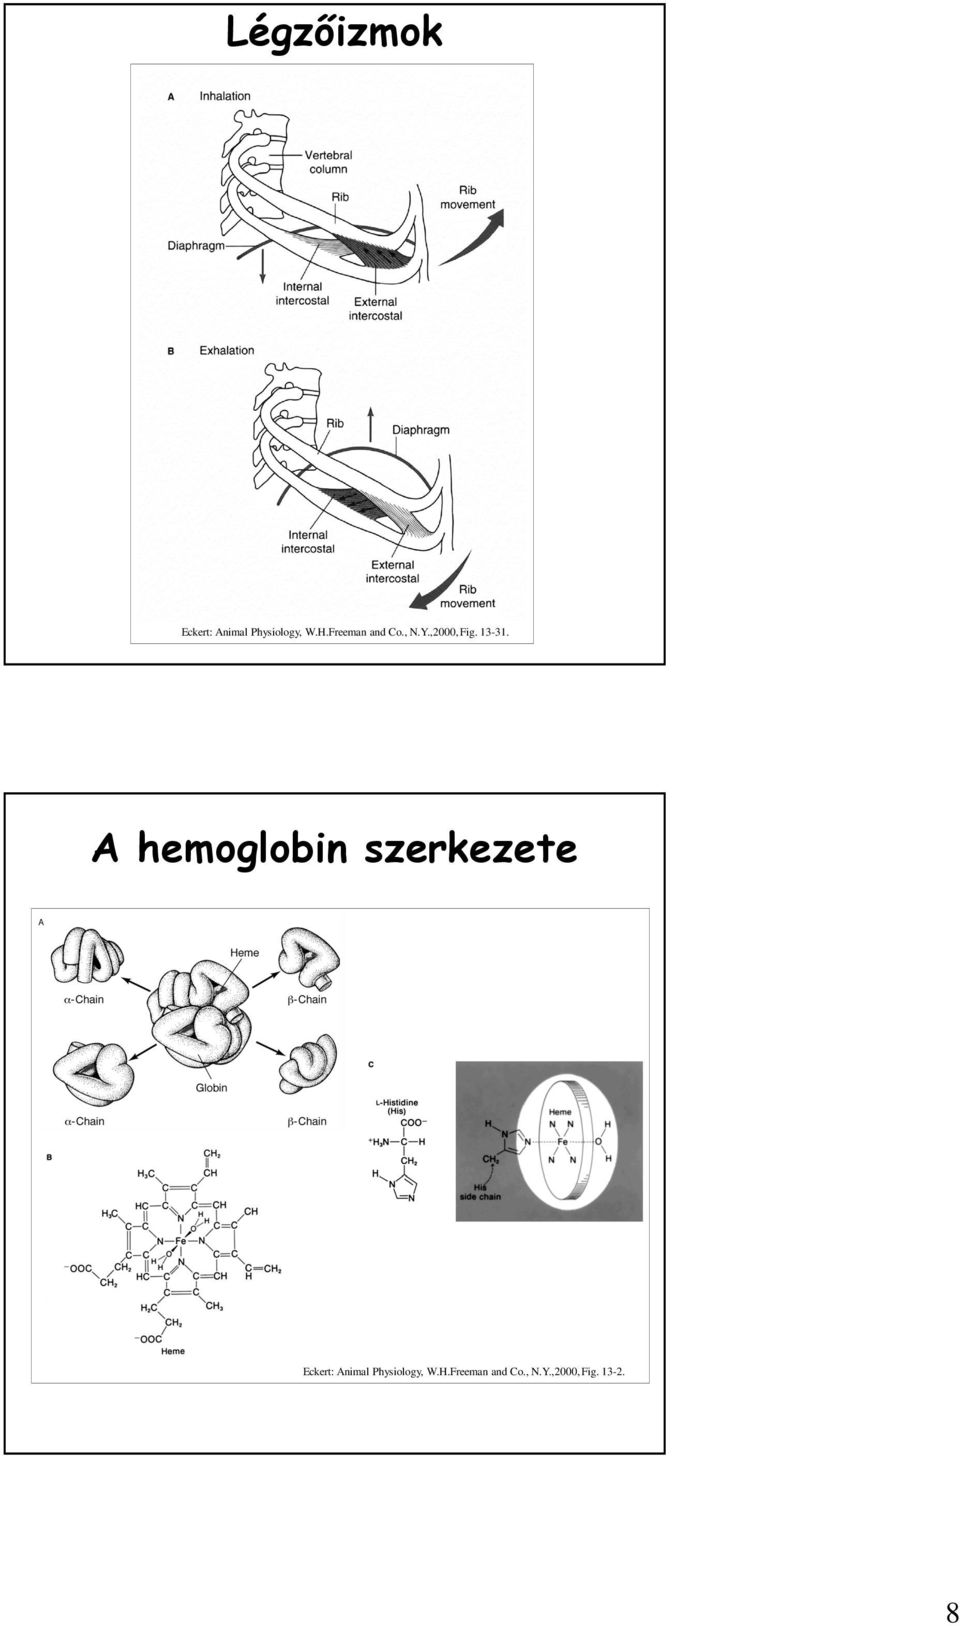 A hemoglobin szerkezete Eckert: Animal